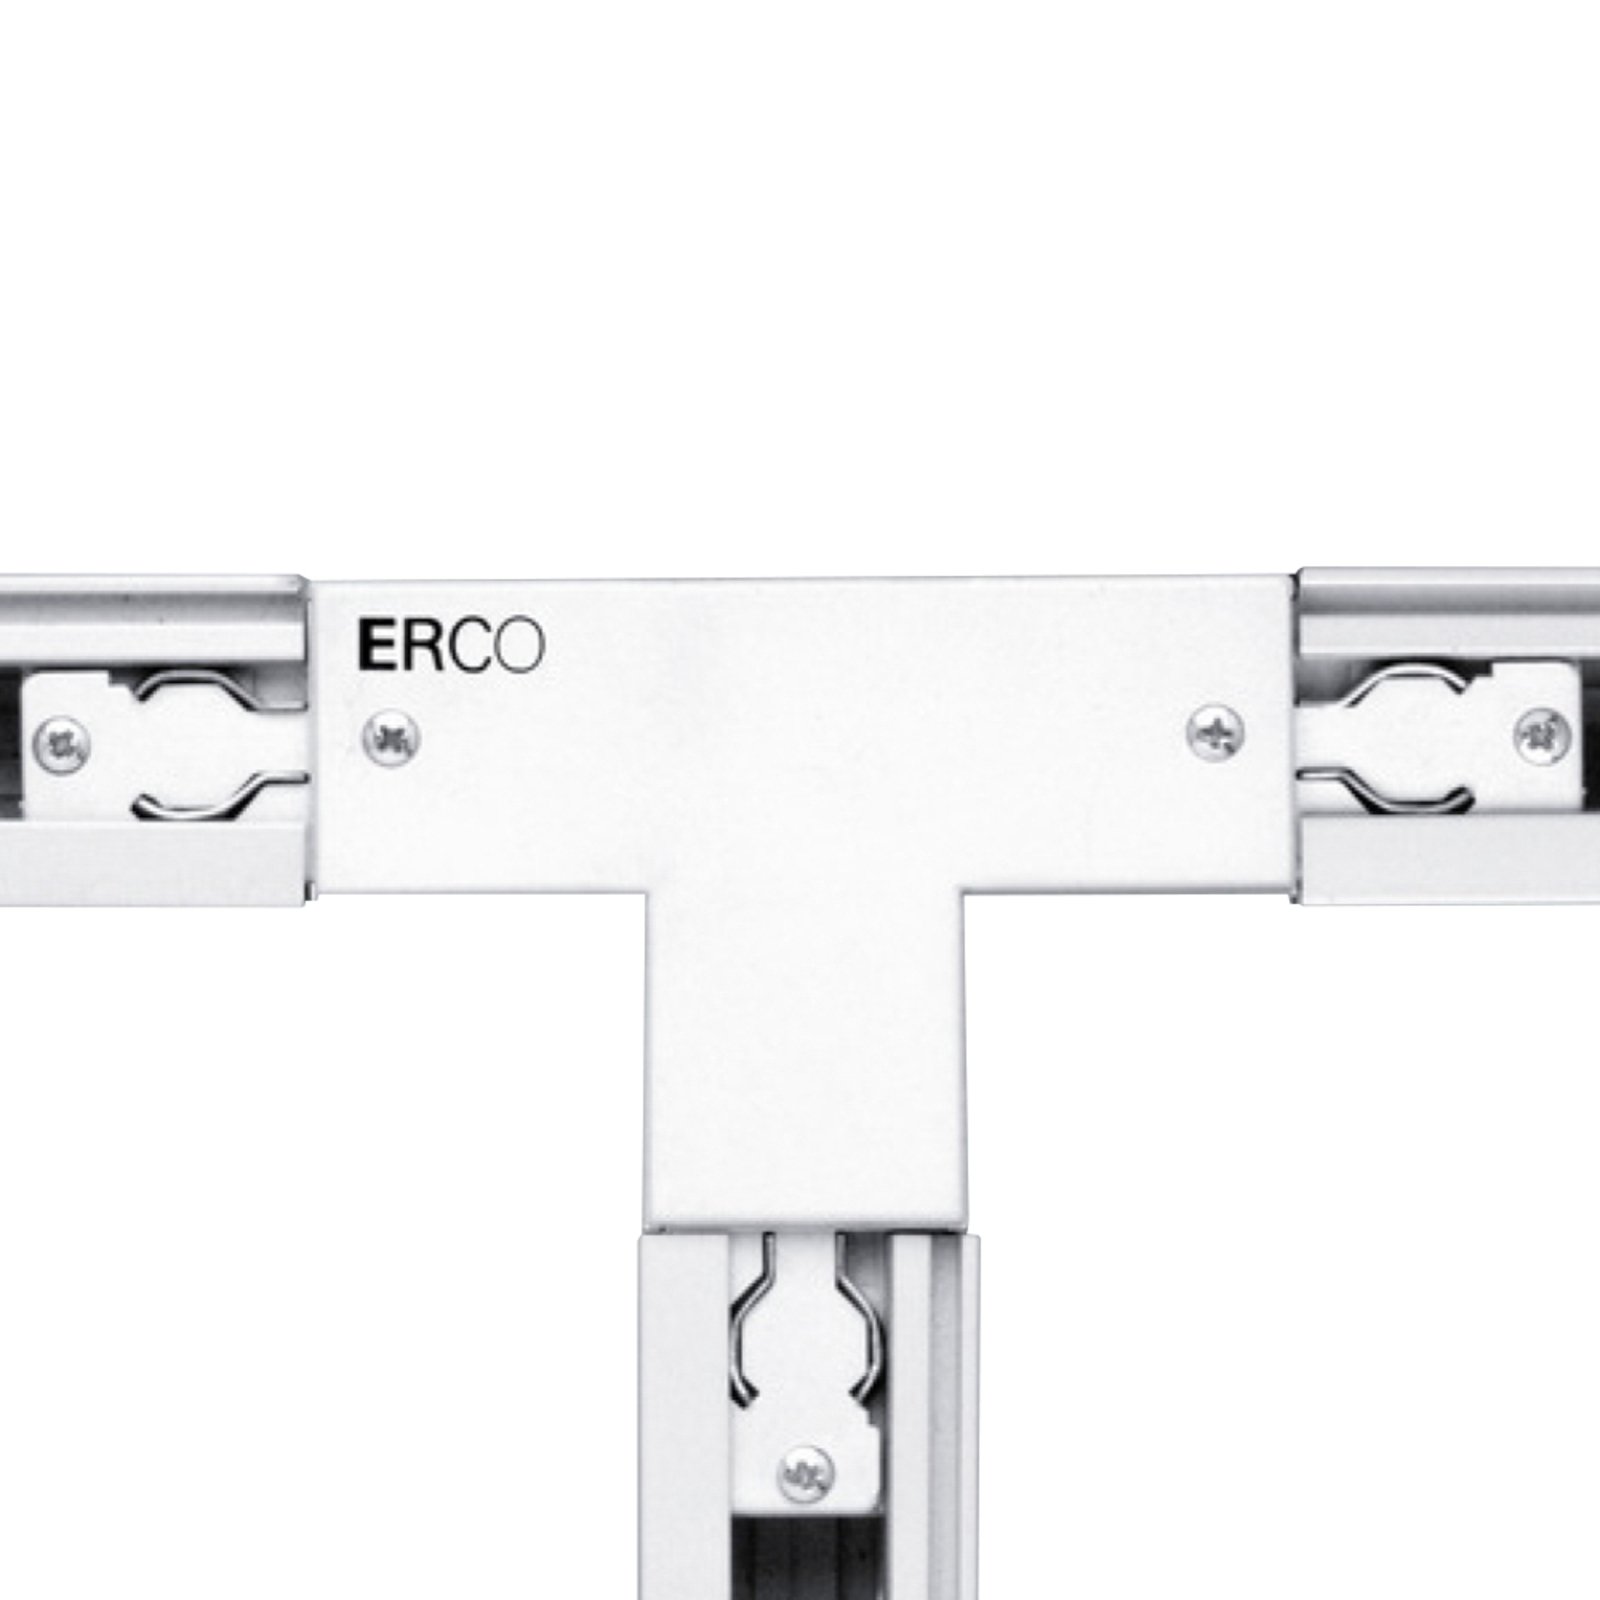 ERCO 3-faset T-kontakt jord høyre, hvit